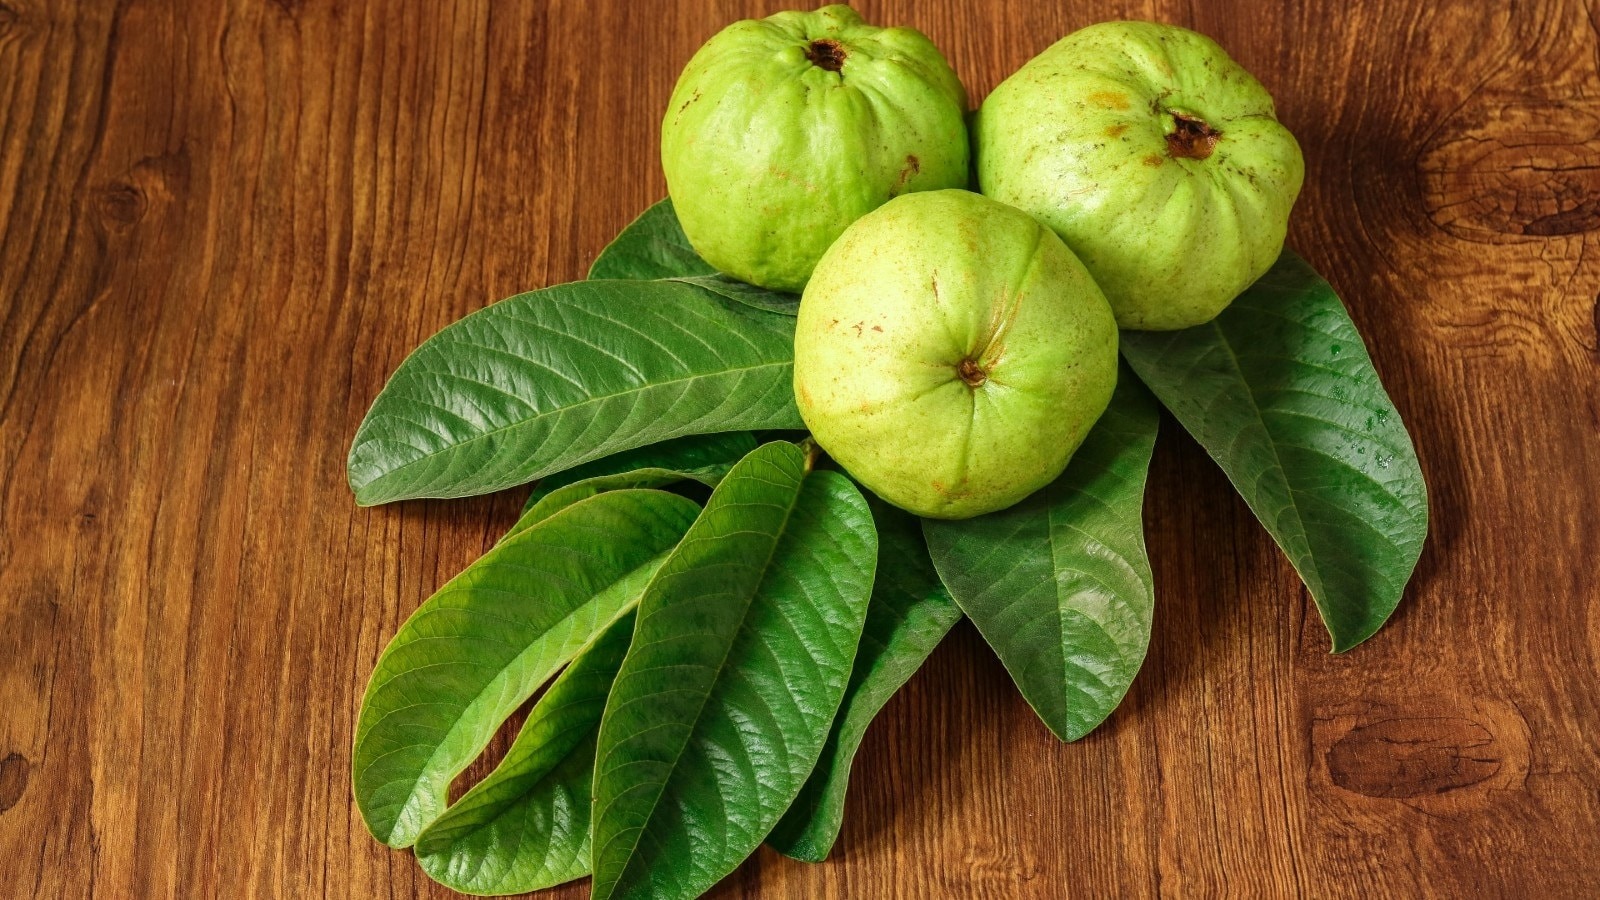 अमरूद के पत्ते, स्वास्थ्य का खजाना, अमरूद, पत्तों के फायदे, सेहत, Guava leaves, treasure of health, guava, benefits of leaves, health,